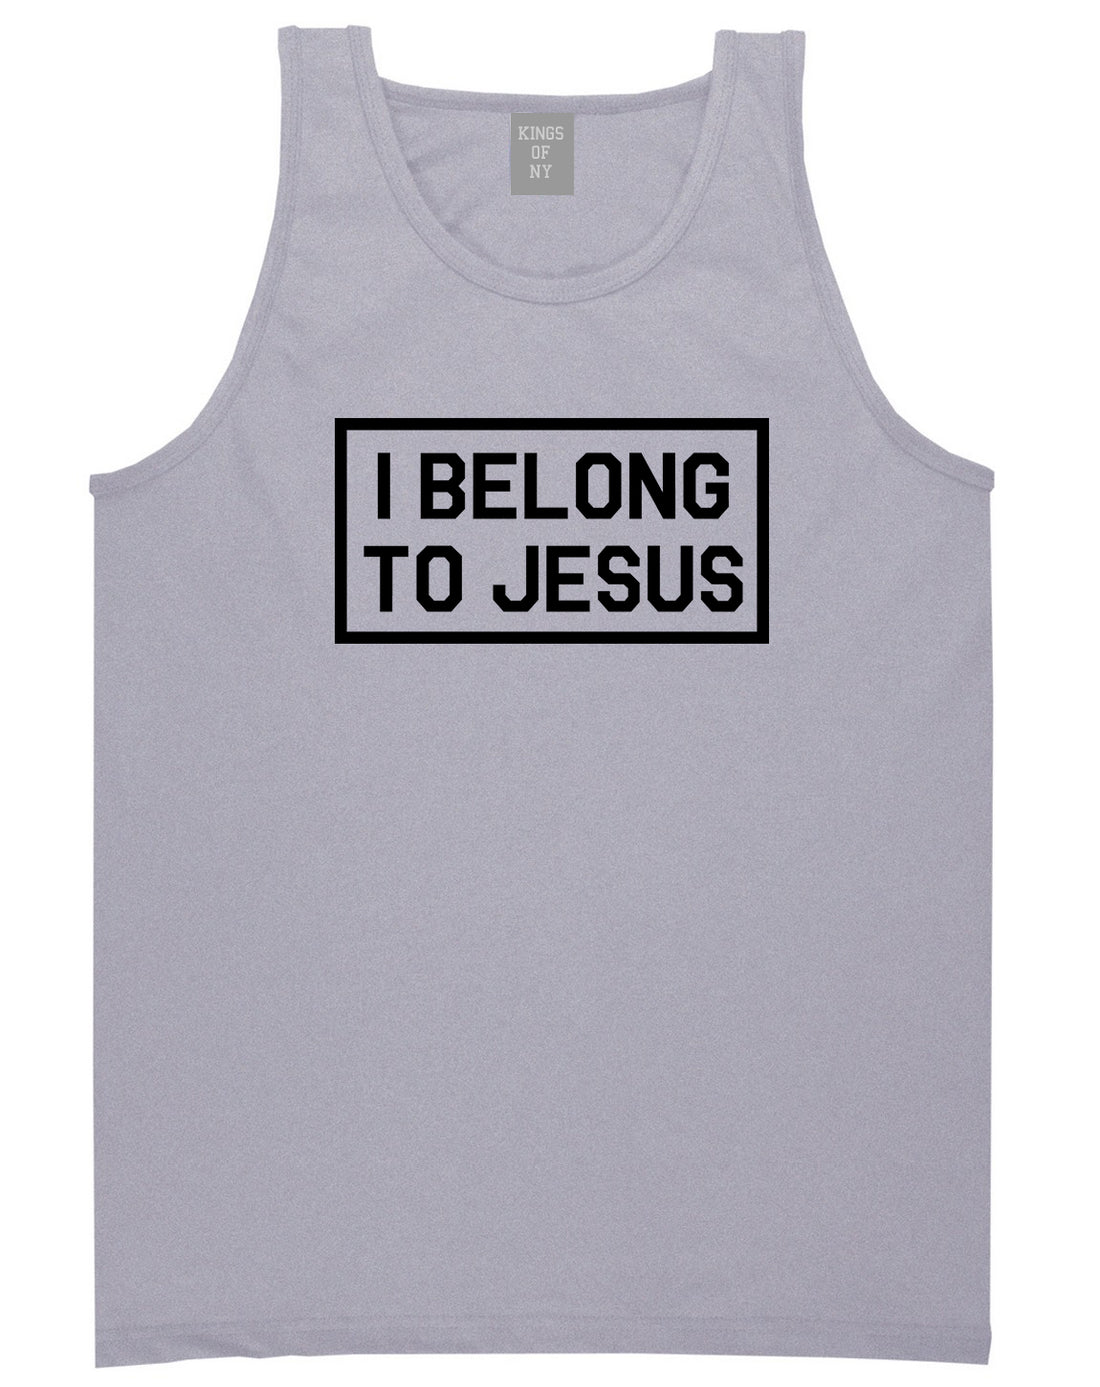 I Belong To Jesus Mens Tank Top Shirt Grey